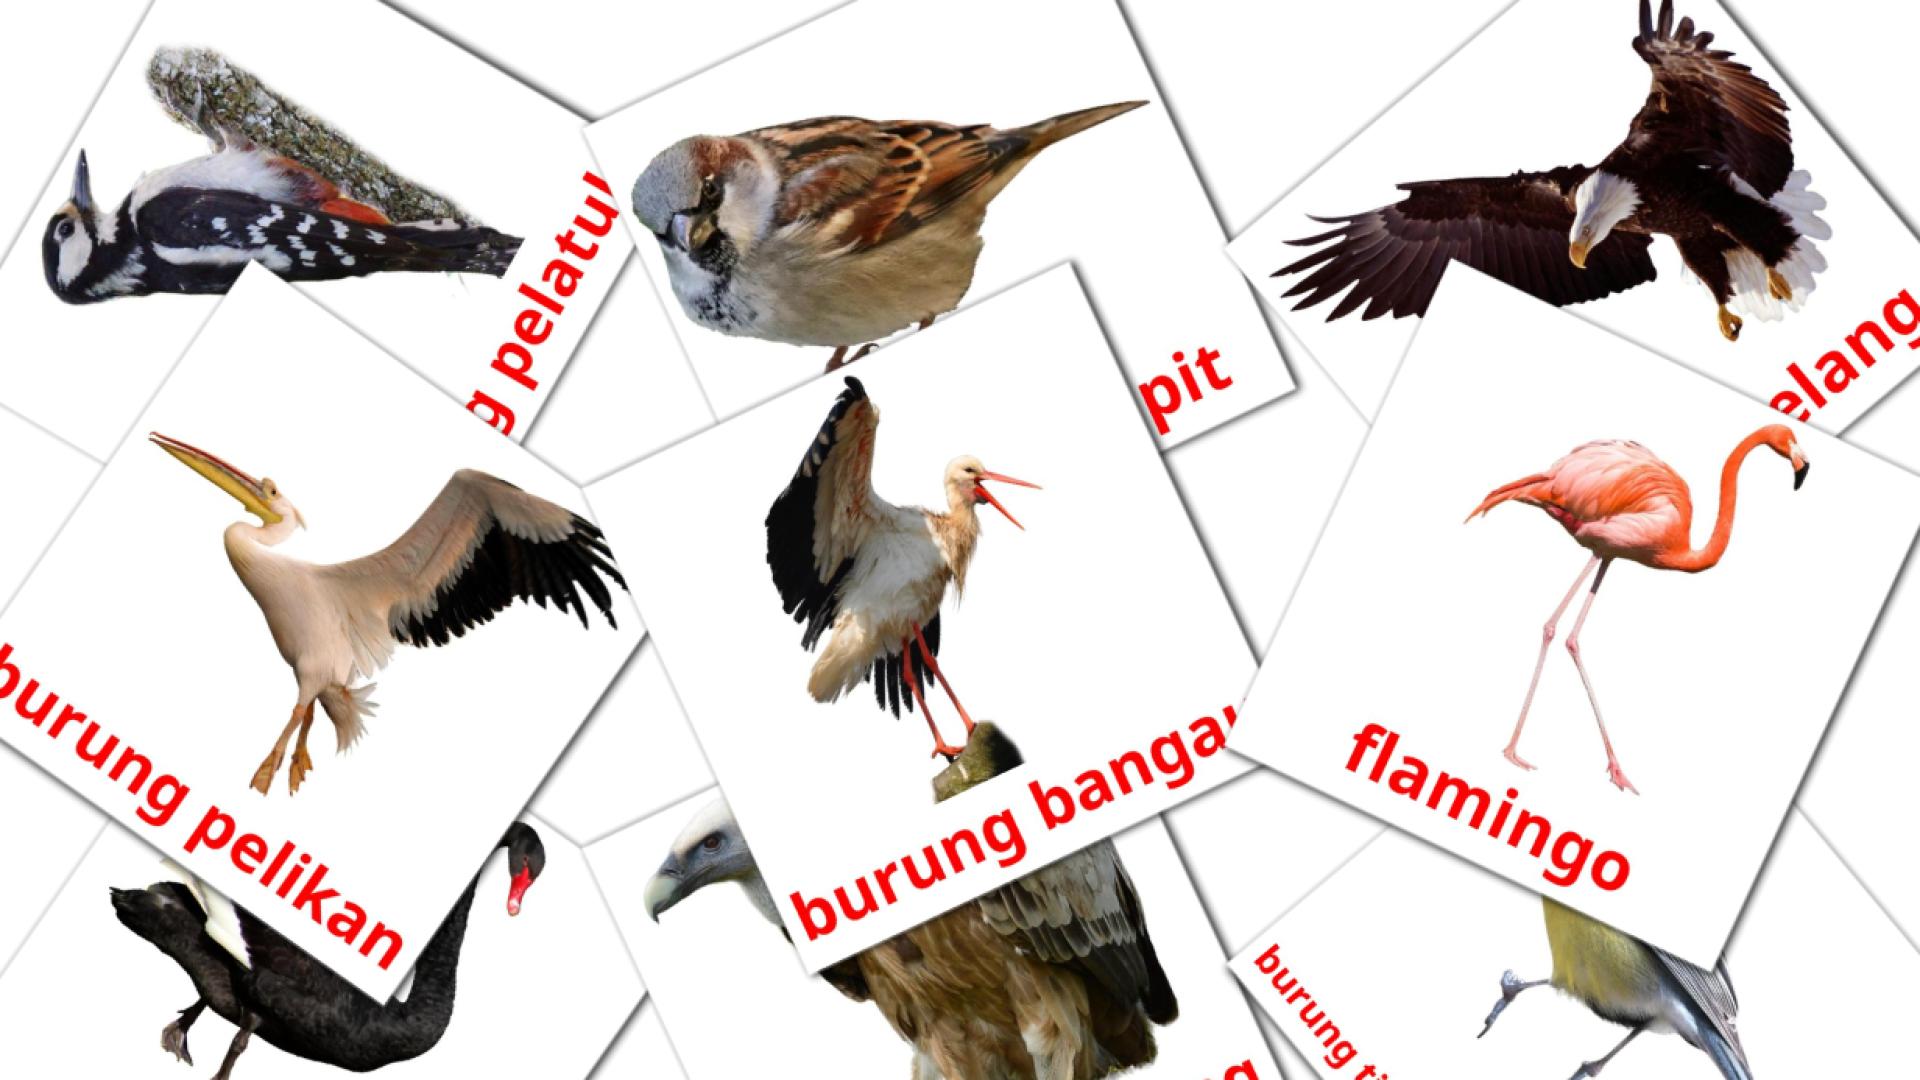 18 Flashcards de Burung liar